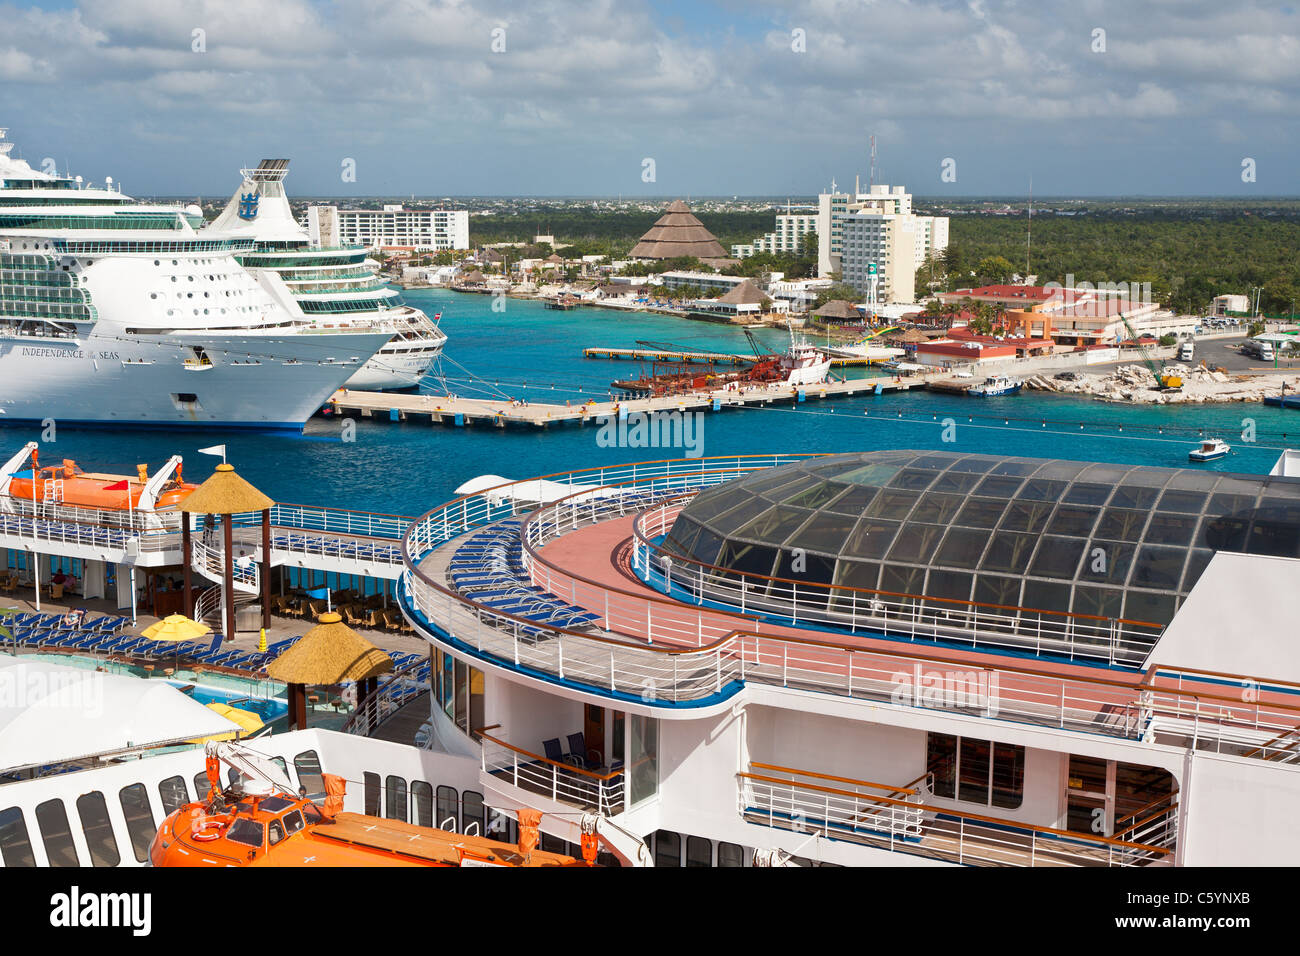 Carnival et Royal Caribbean deux navires de croisière au port de Cozumel, Mexique dans la mer des Caraïbes Banque D'Images